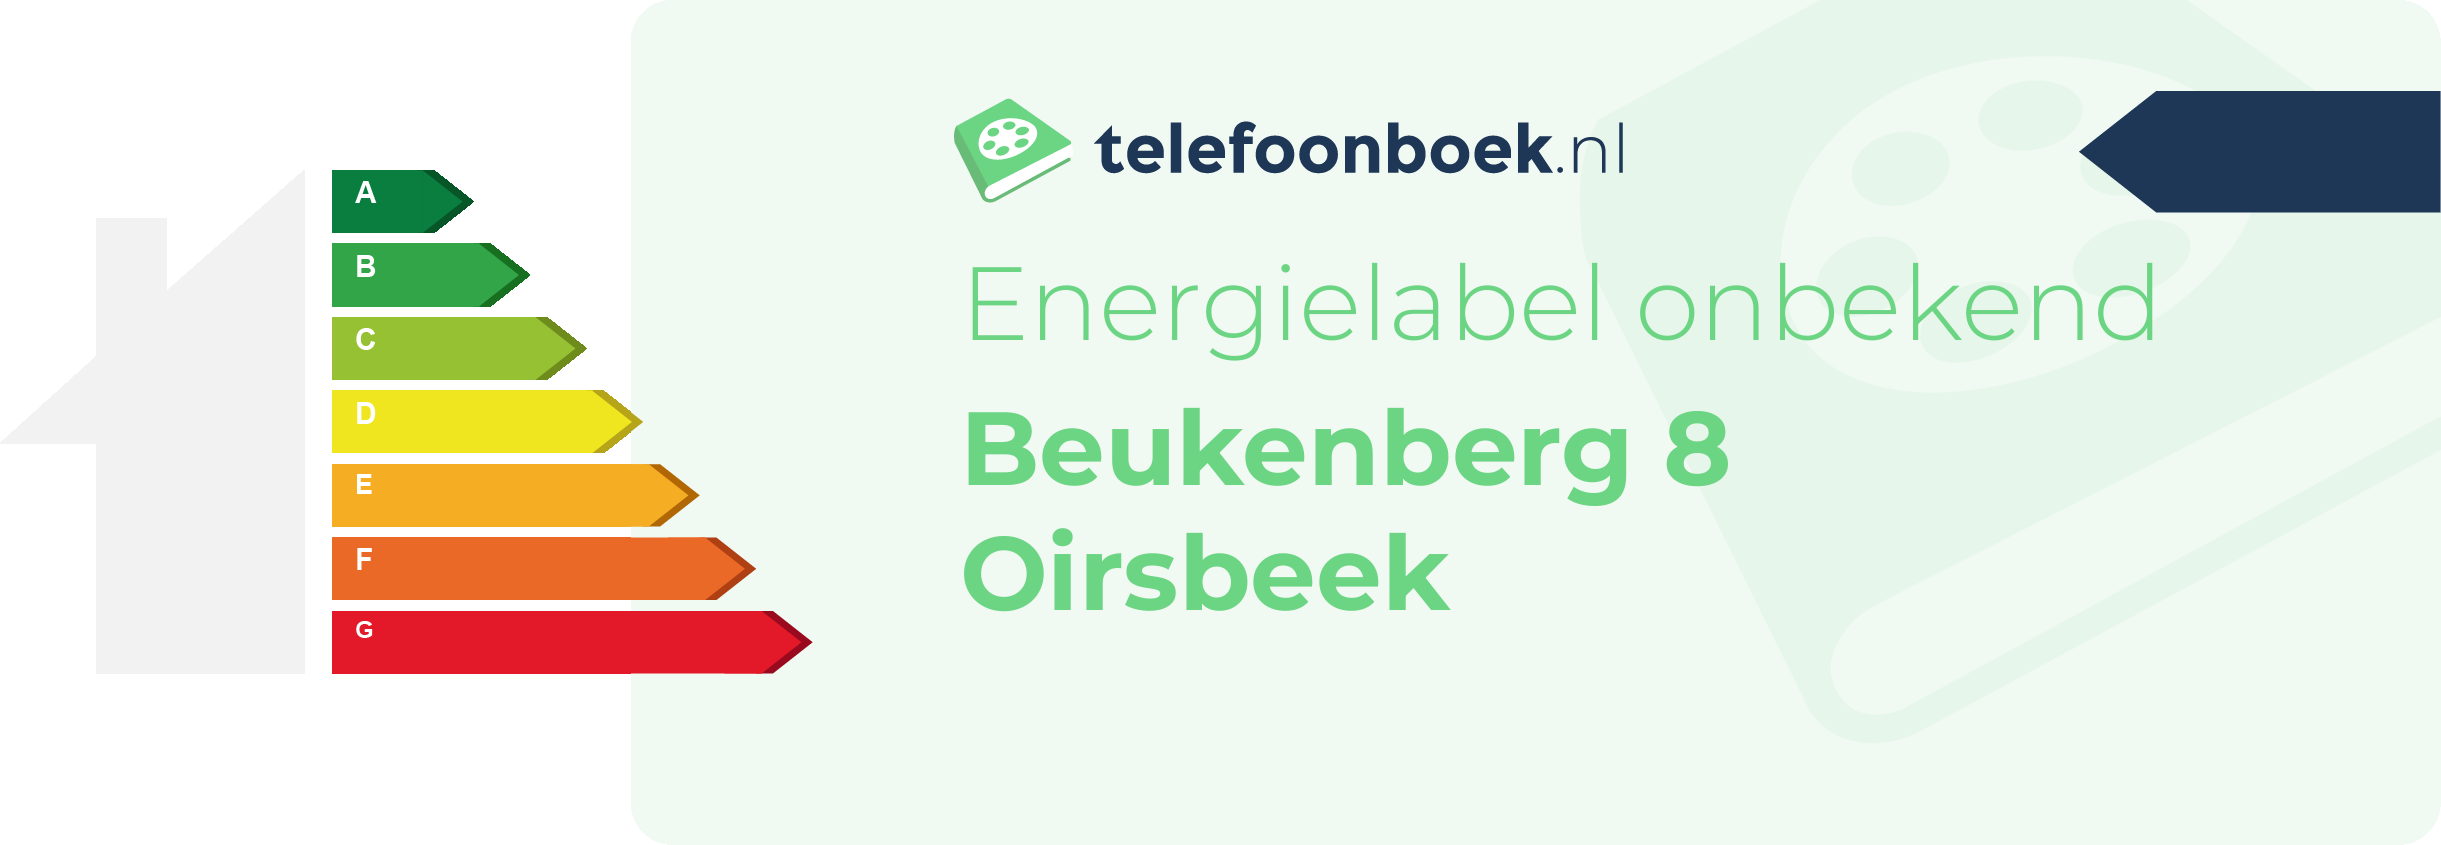 Energielabel Beukenberg 8 Oirsbeek